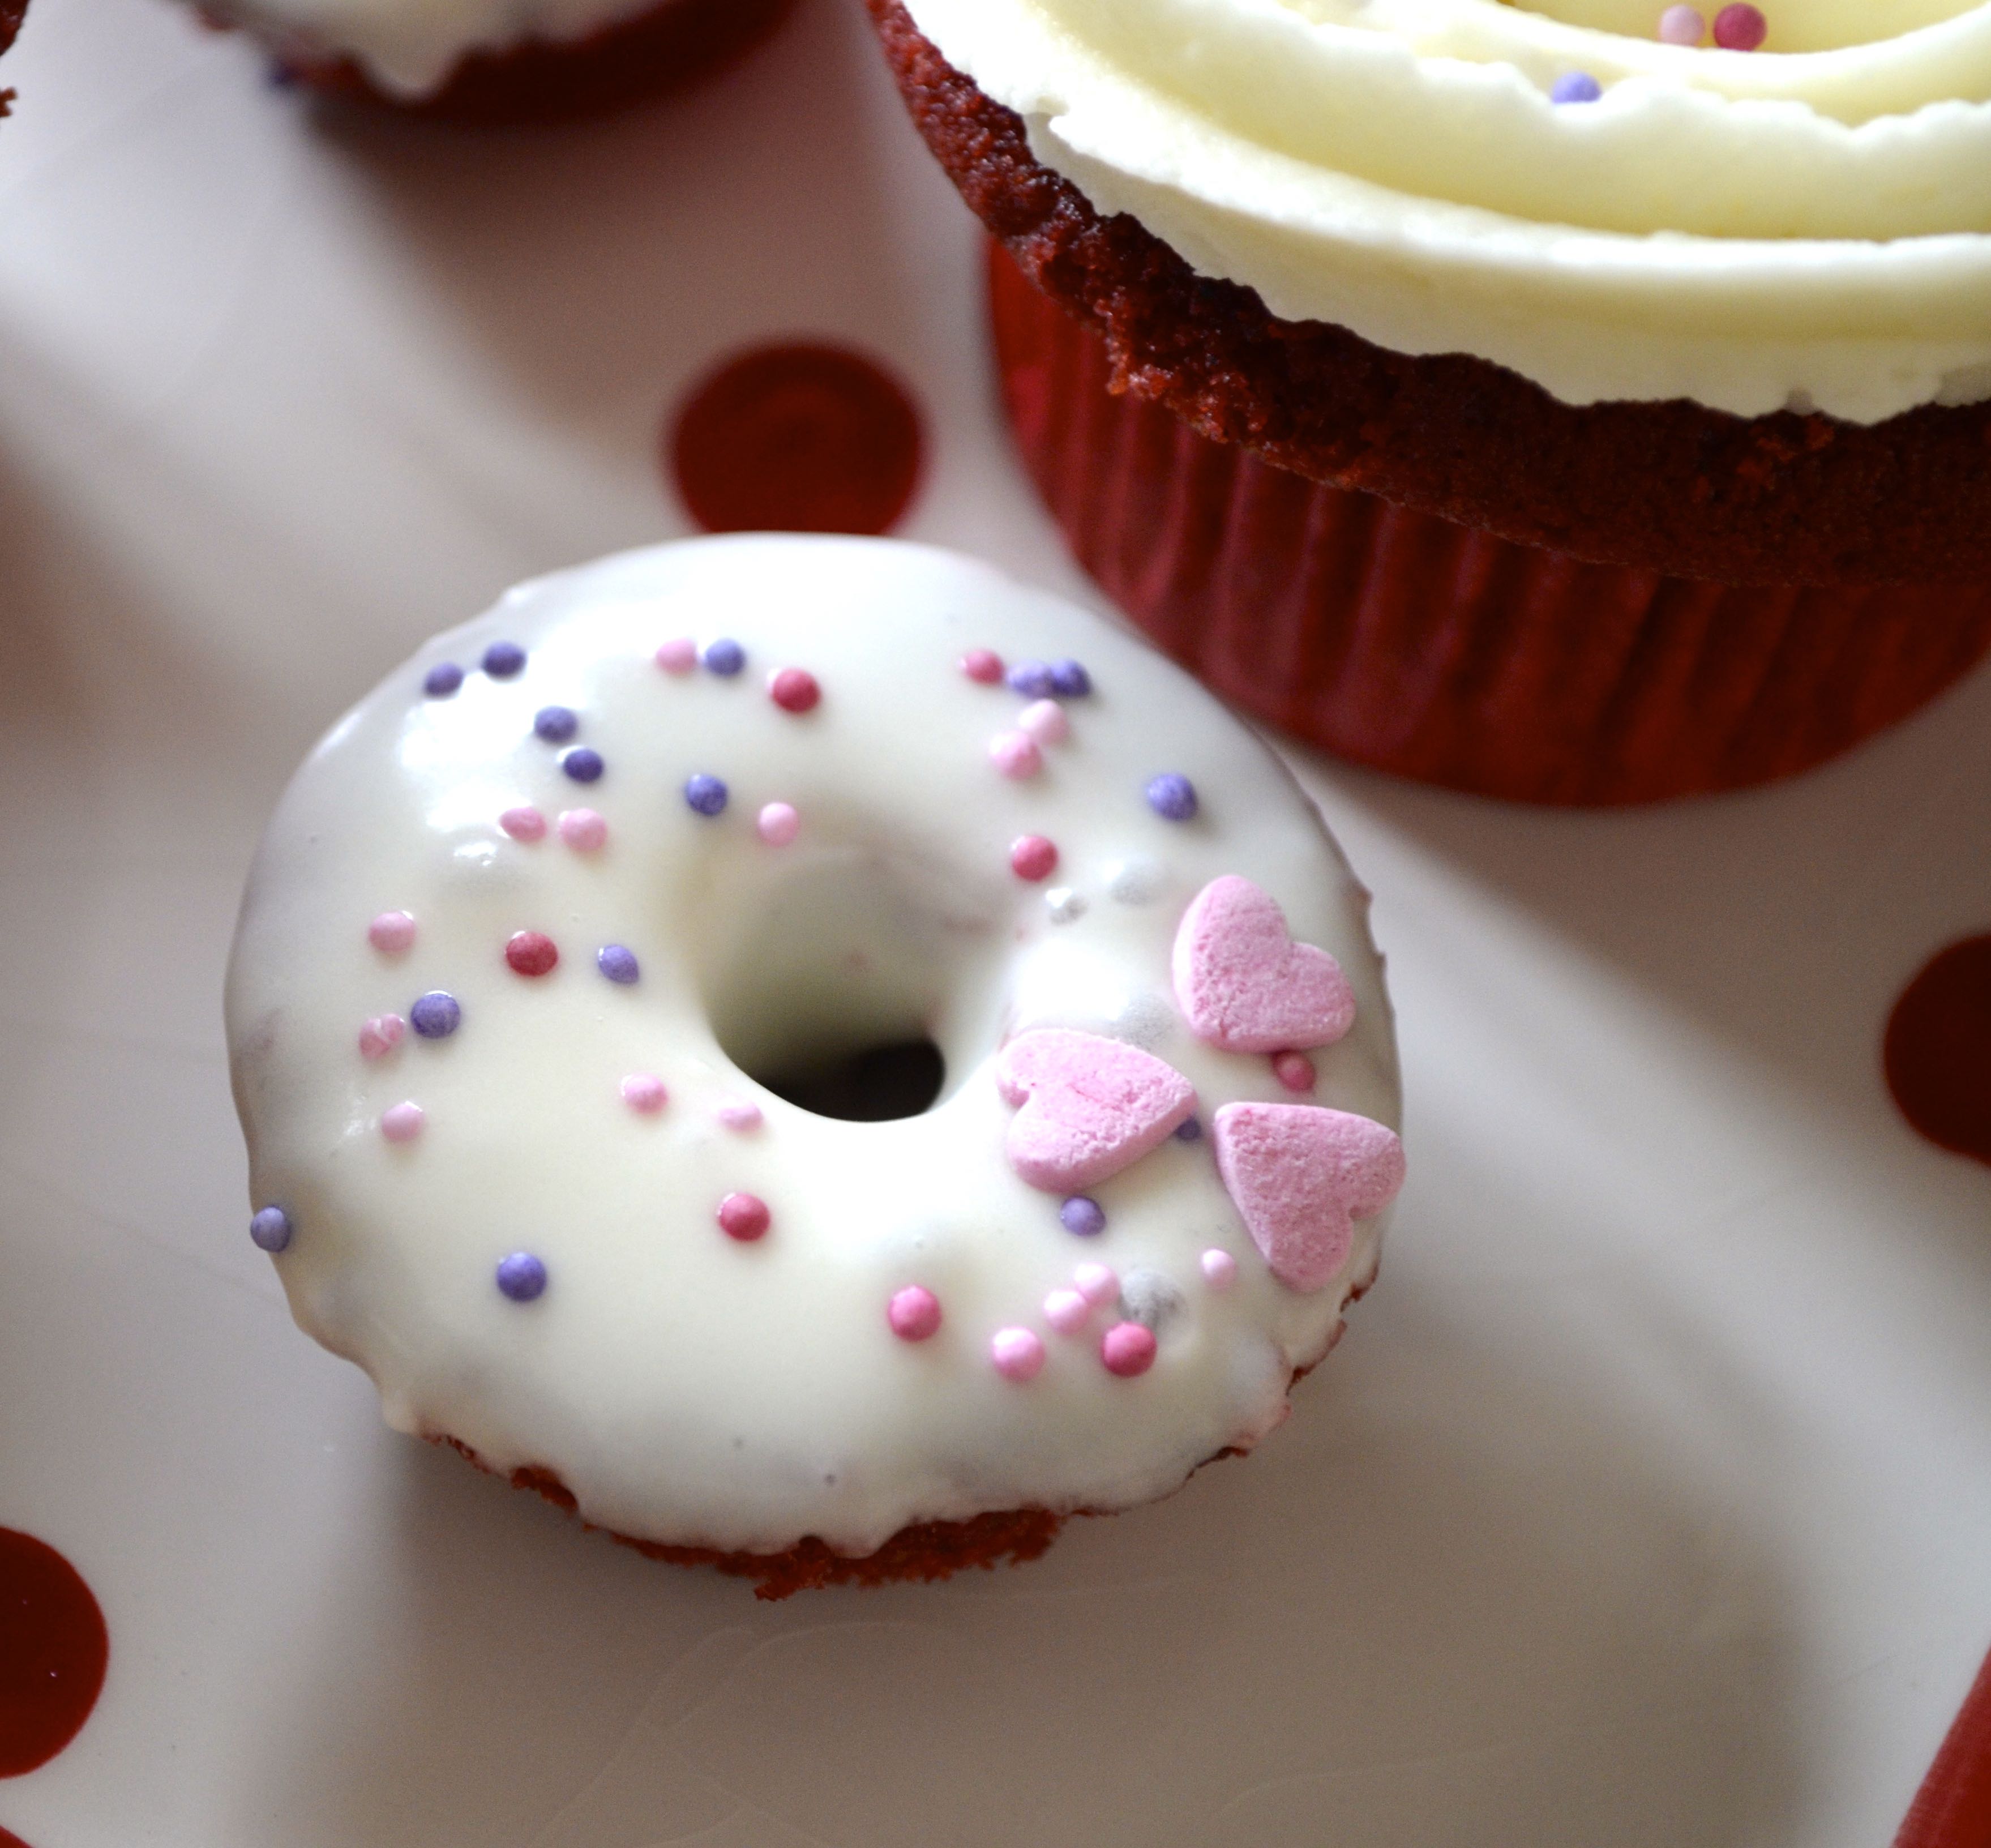 Red Velvet Cupcakes 2